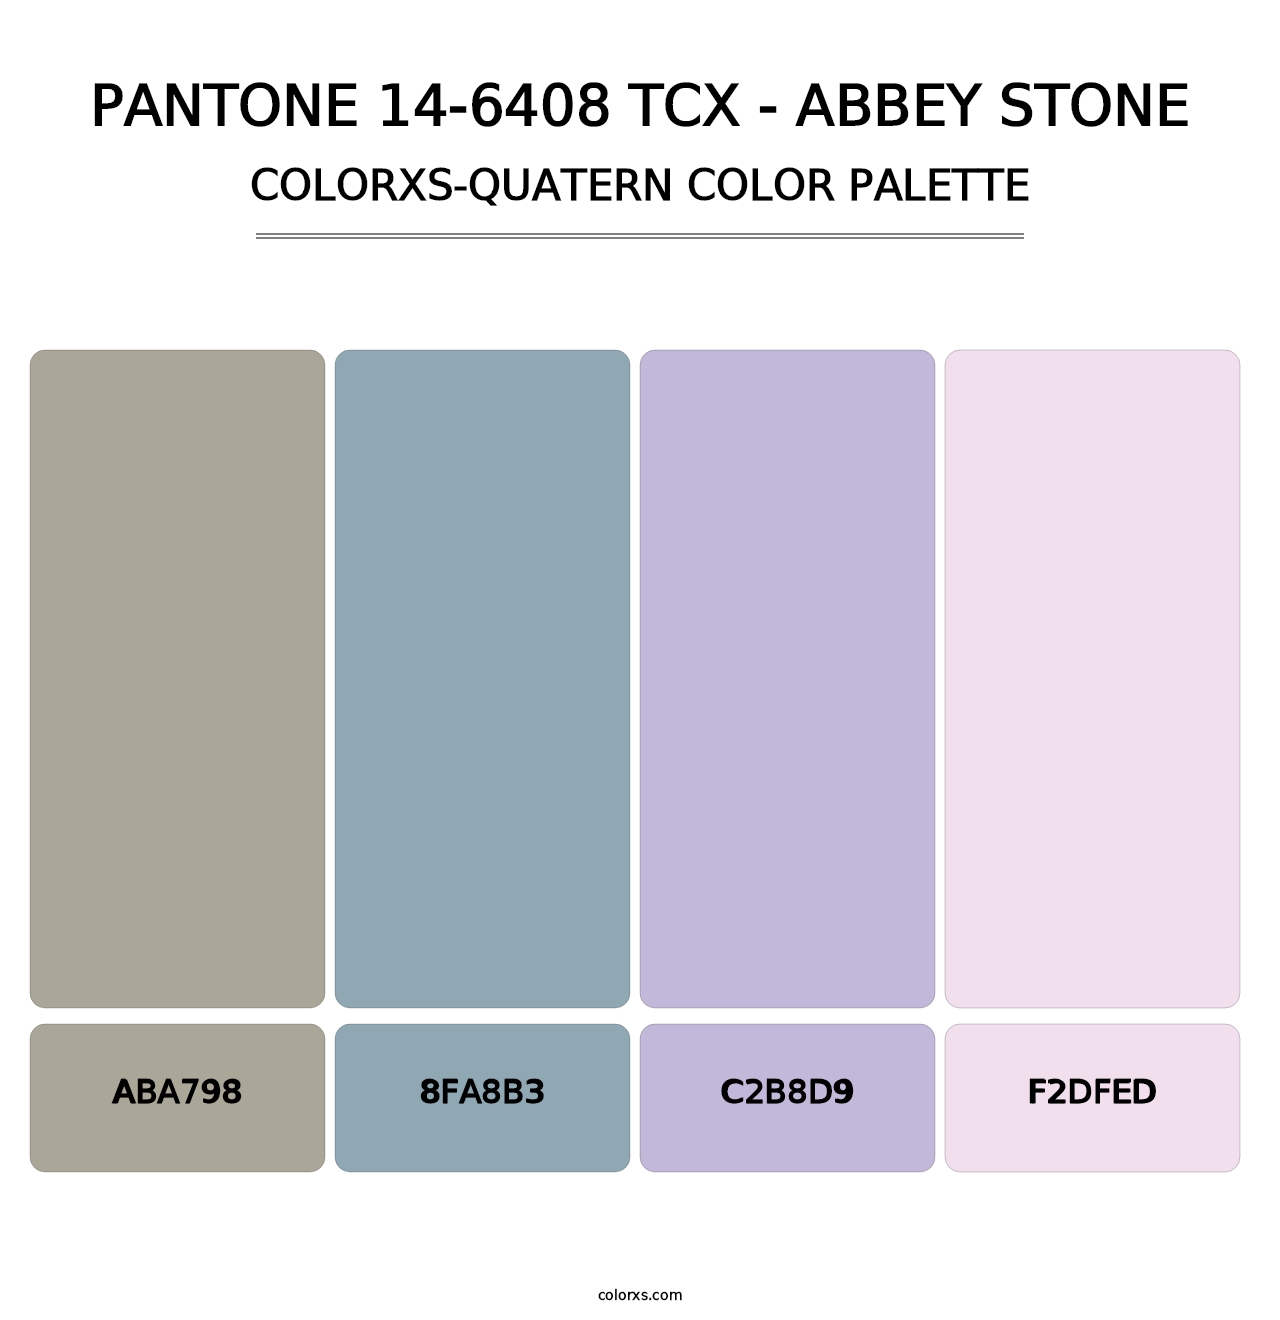 PANTONE 14-6408 TCX - Abbey Stone - Colorxs Quatern Palette